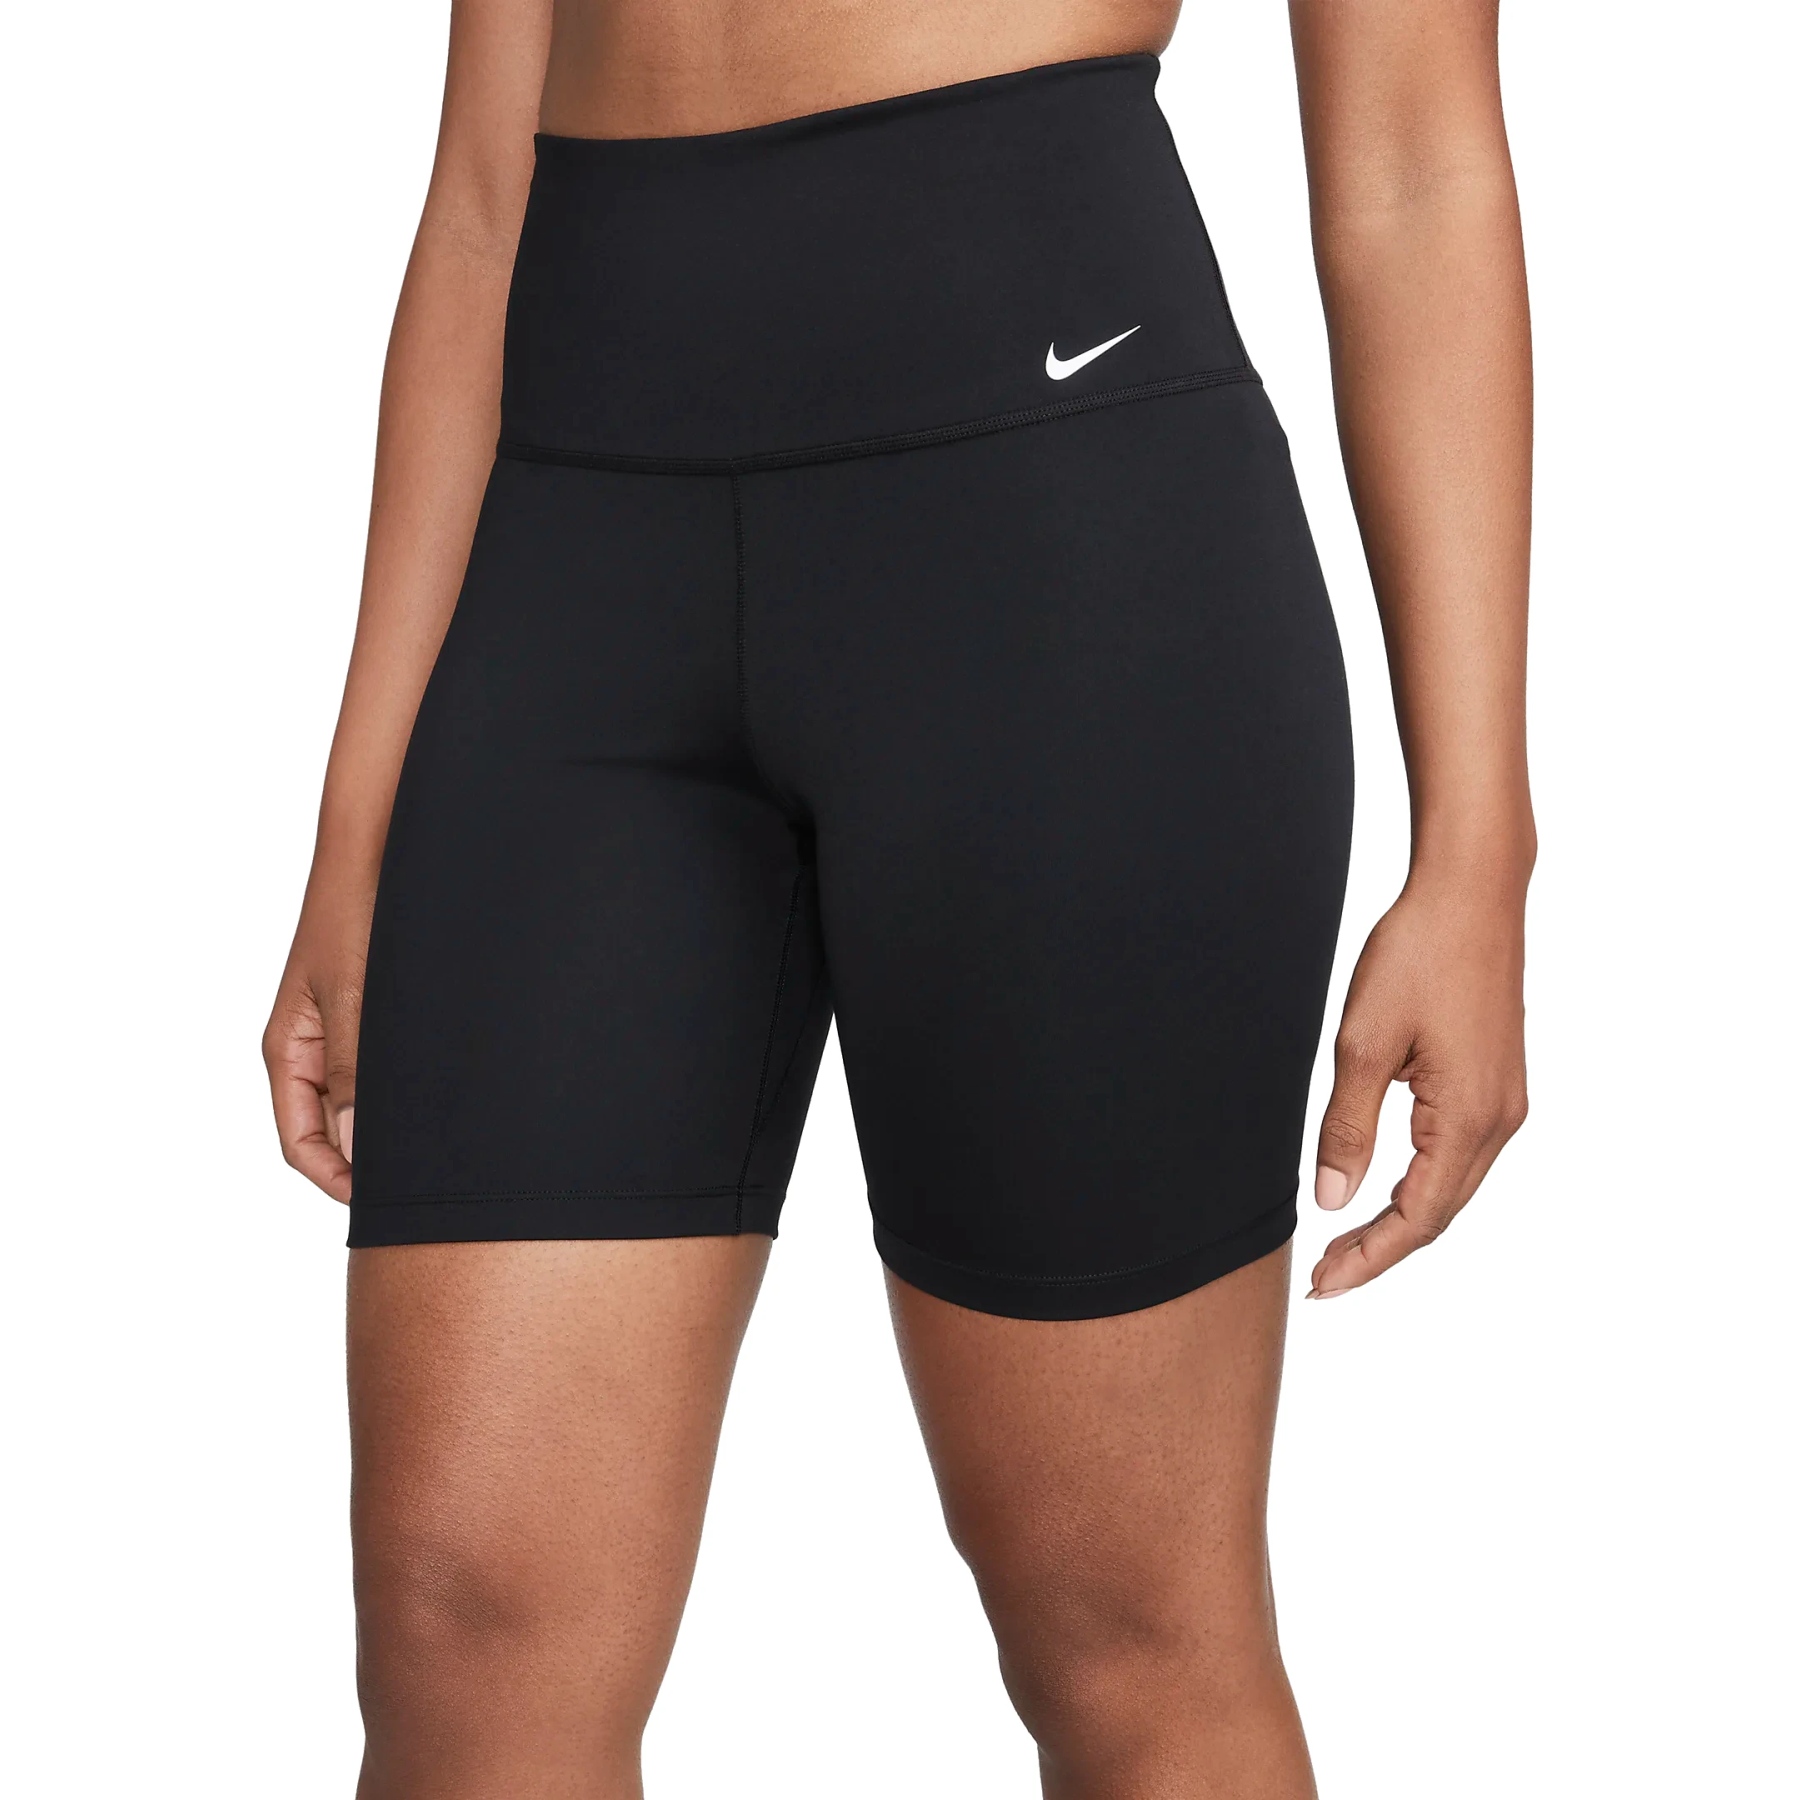 Bild von Nike One Dri-FIT High-Rise 7" Shorts Damen - schwarz/weiß DV9022-010